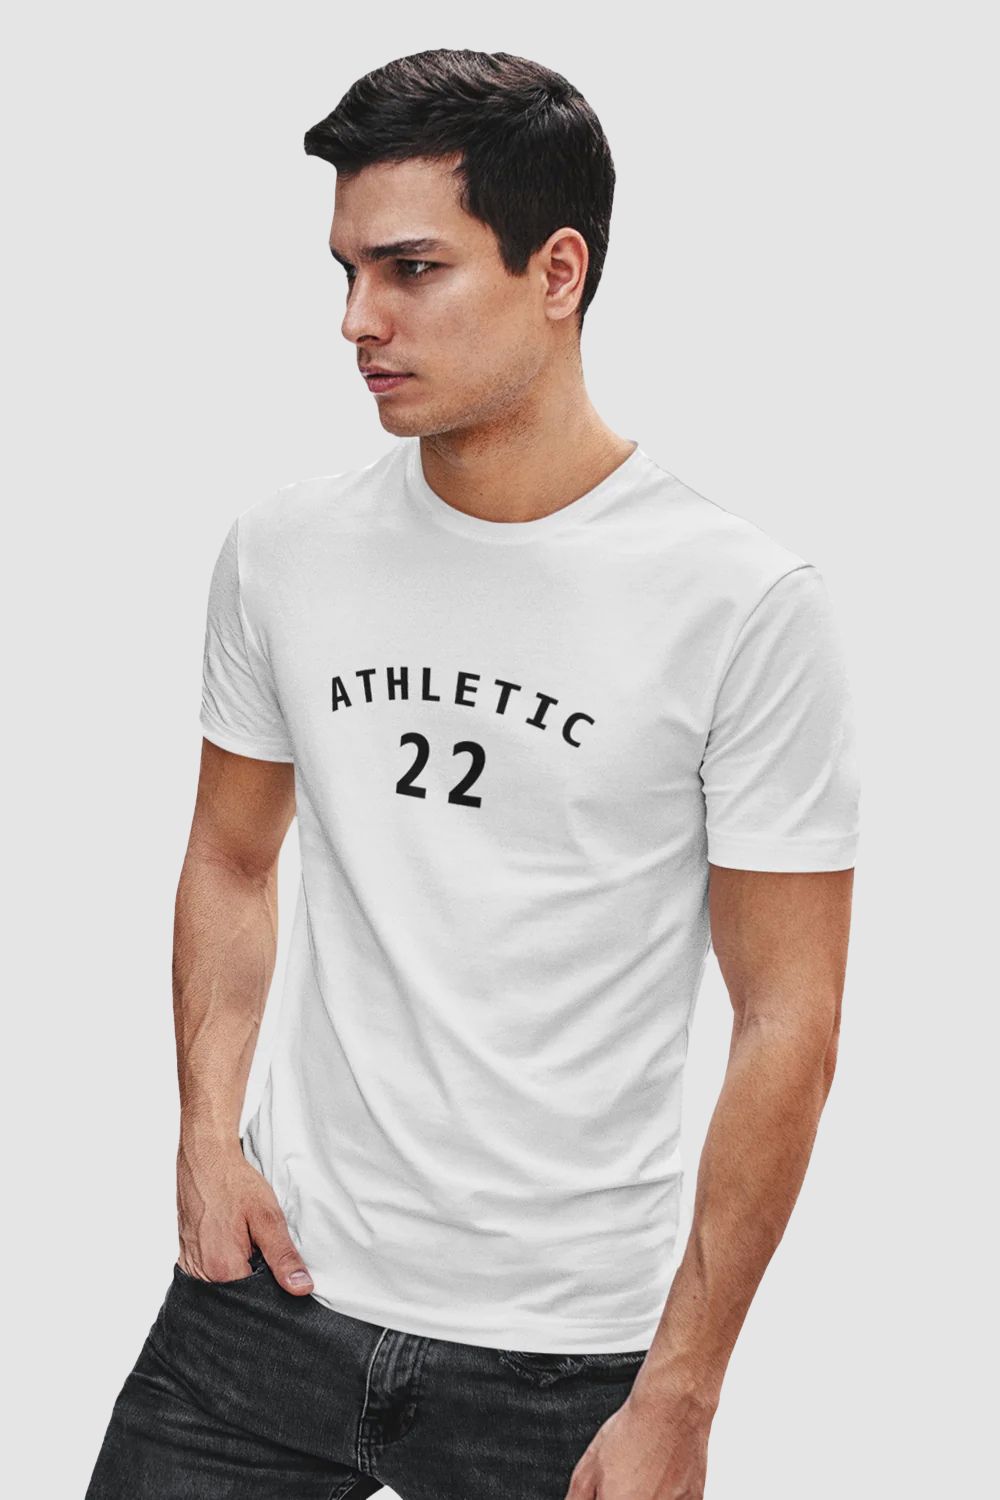 Athletic Graphic Printed White Tshirt